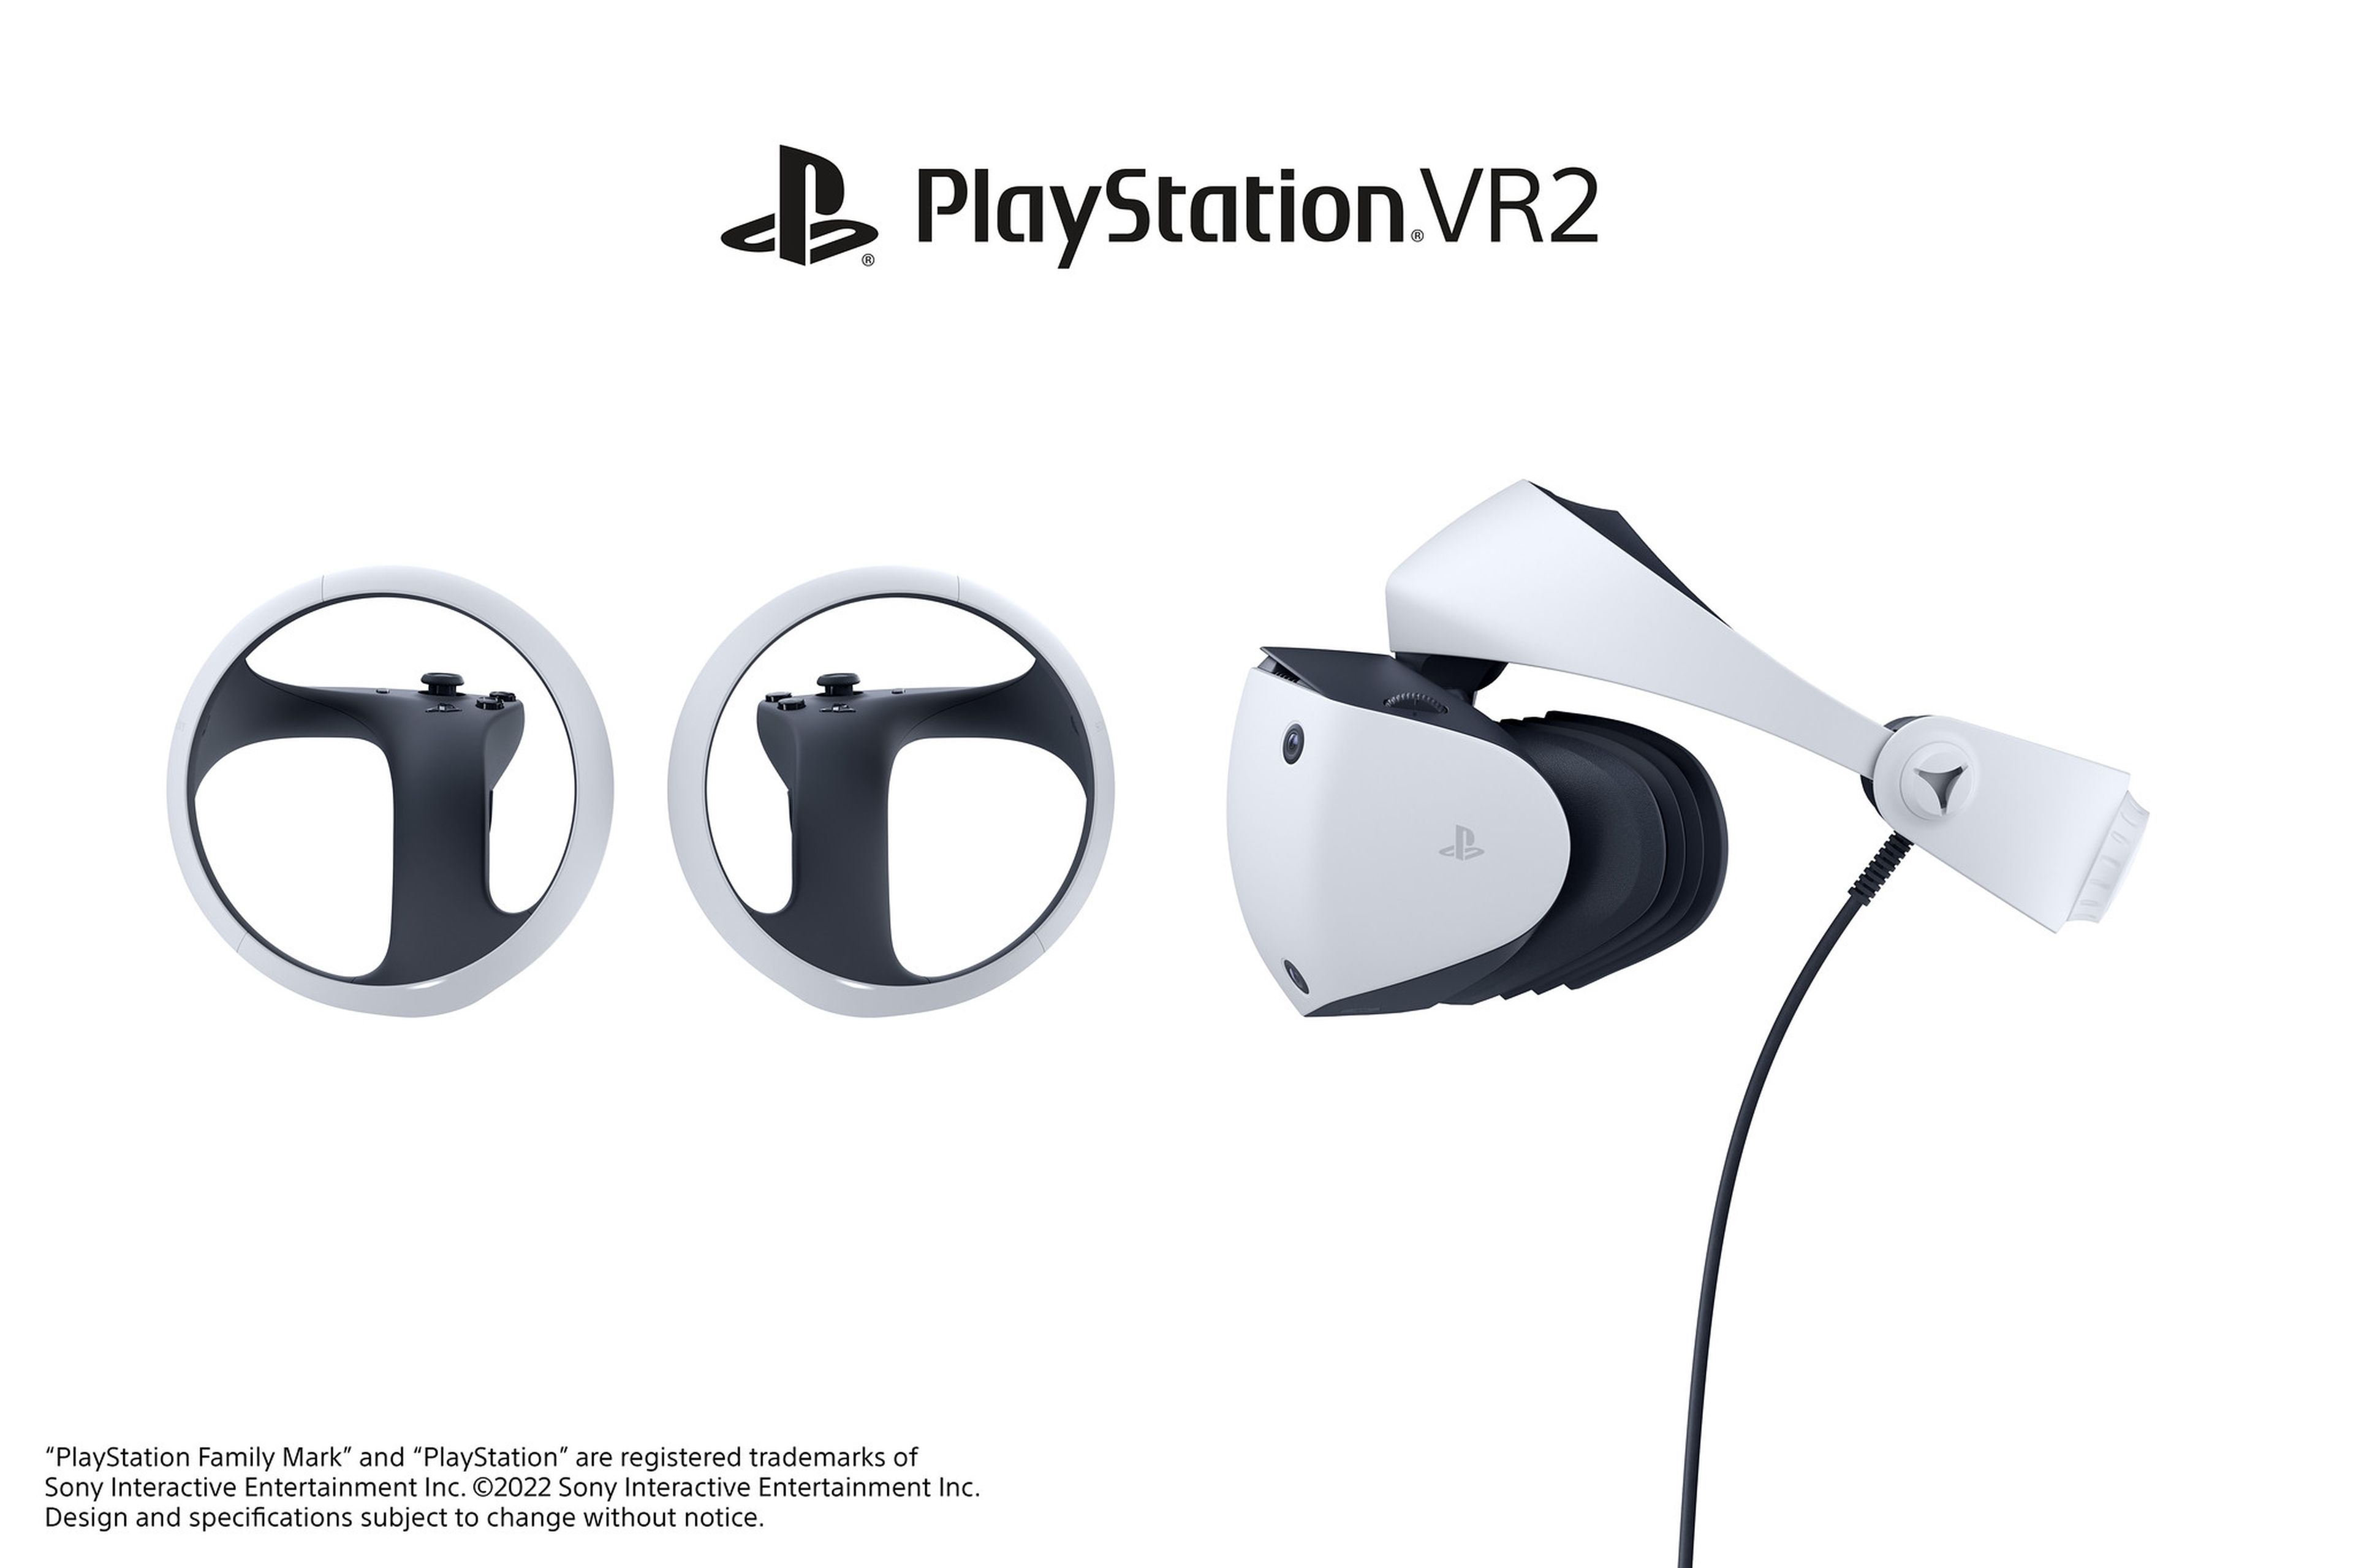 Sony desvela el aspecto y el nombre final de sus nuevas gafas de realidad virtual PlayStation VR2, y son revolucionarias